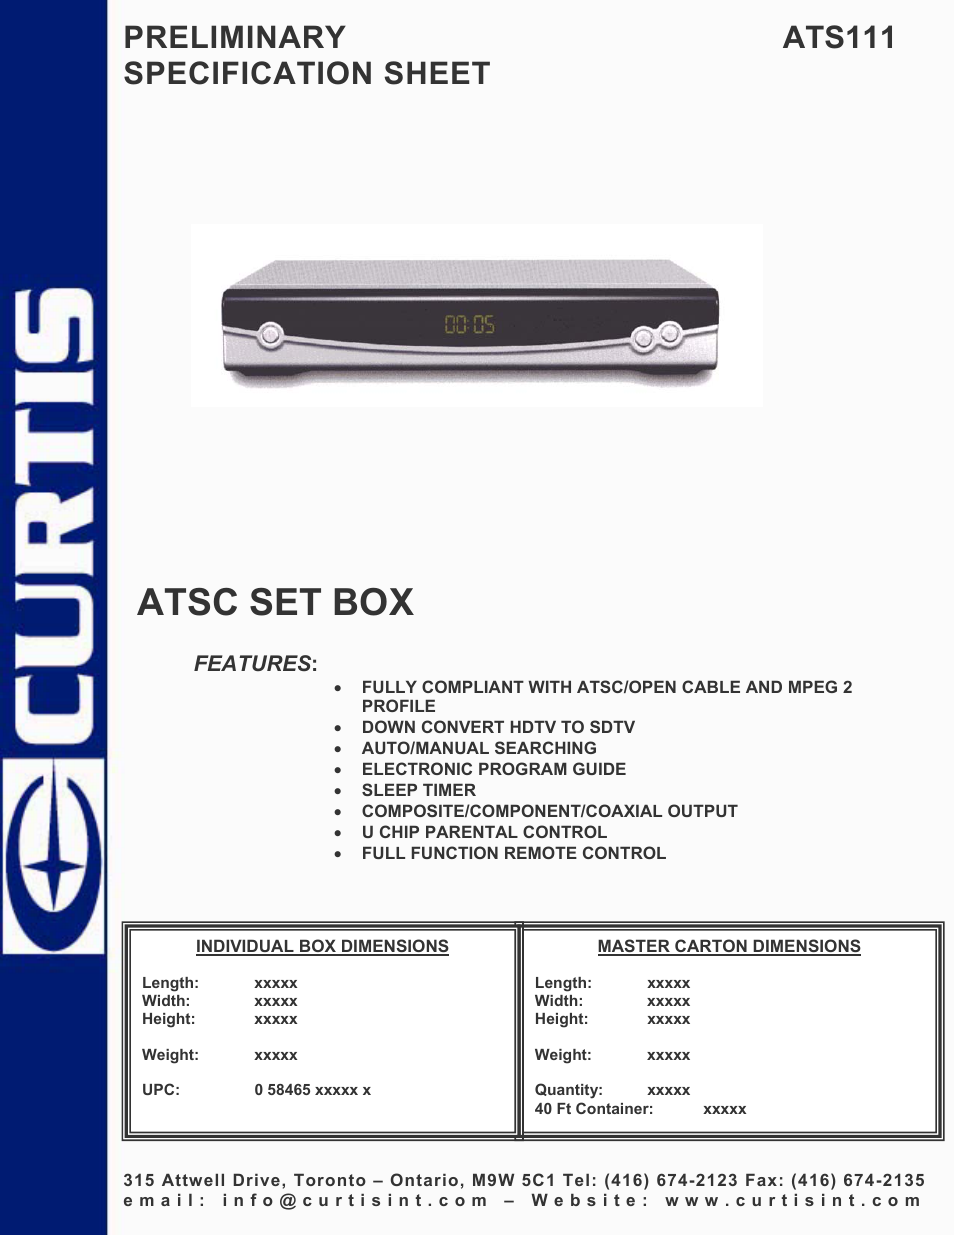 ATSC ATS111